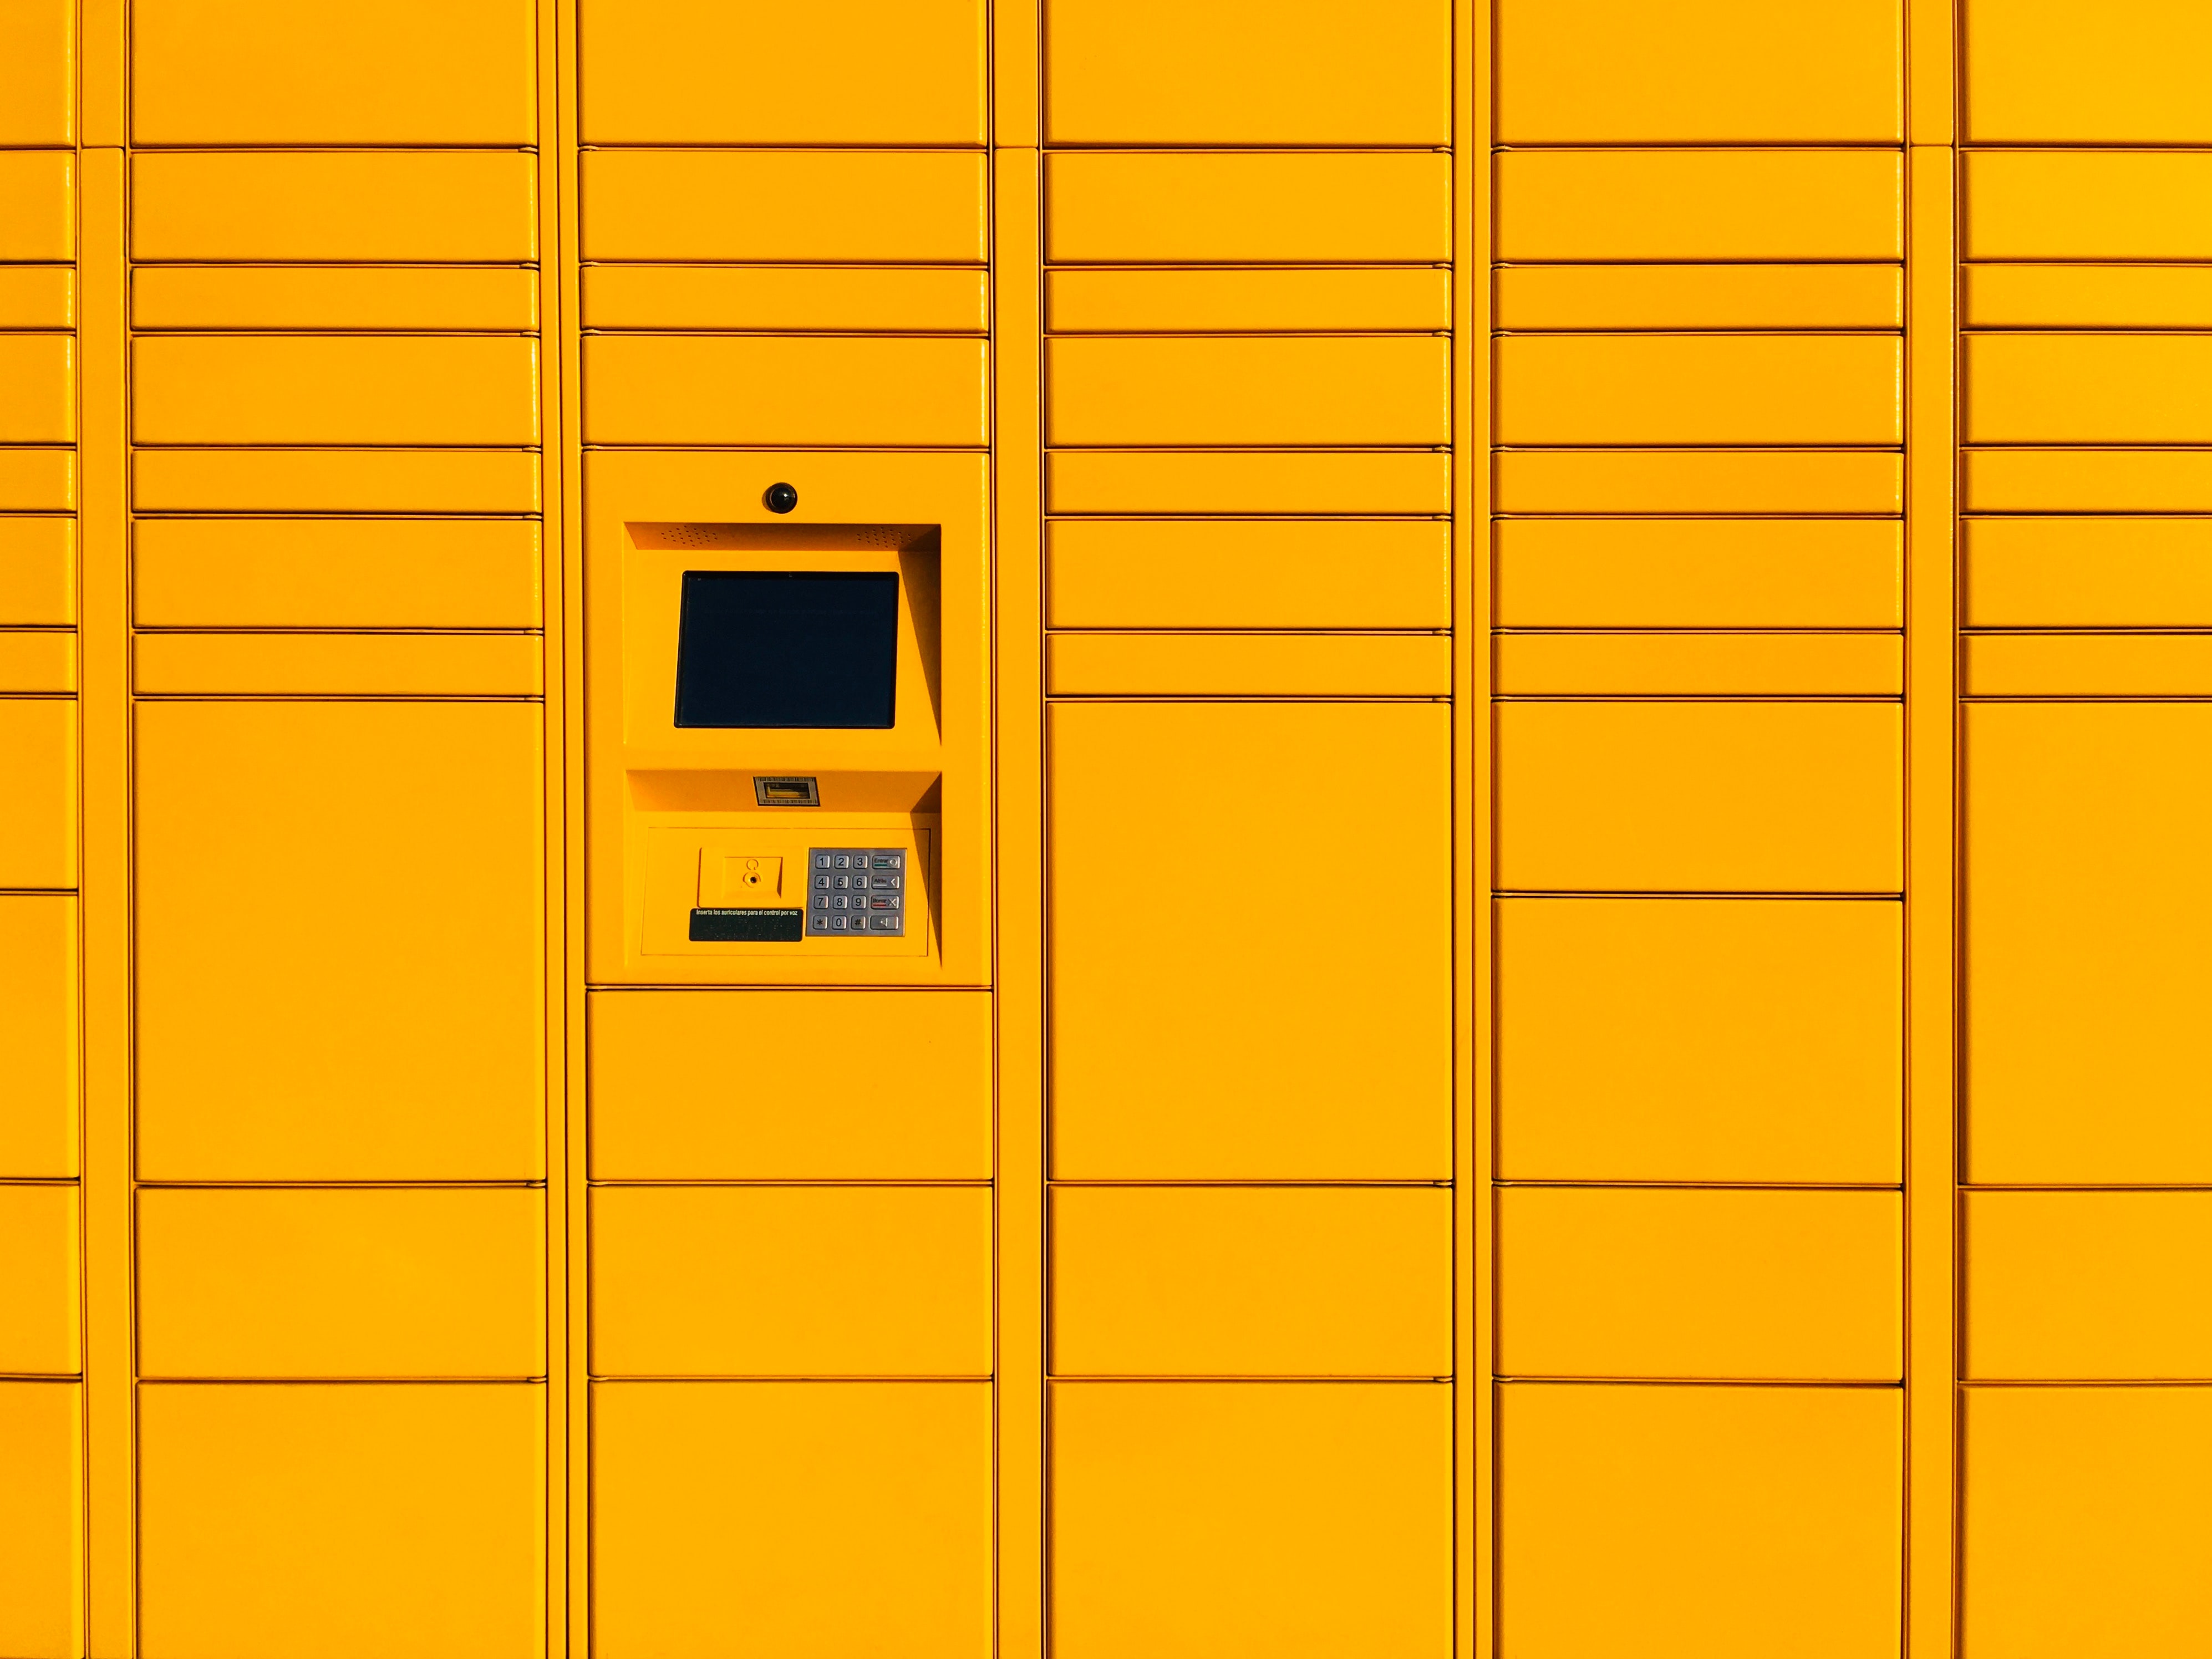 automat paczkowy unsplash